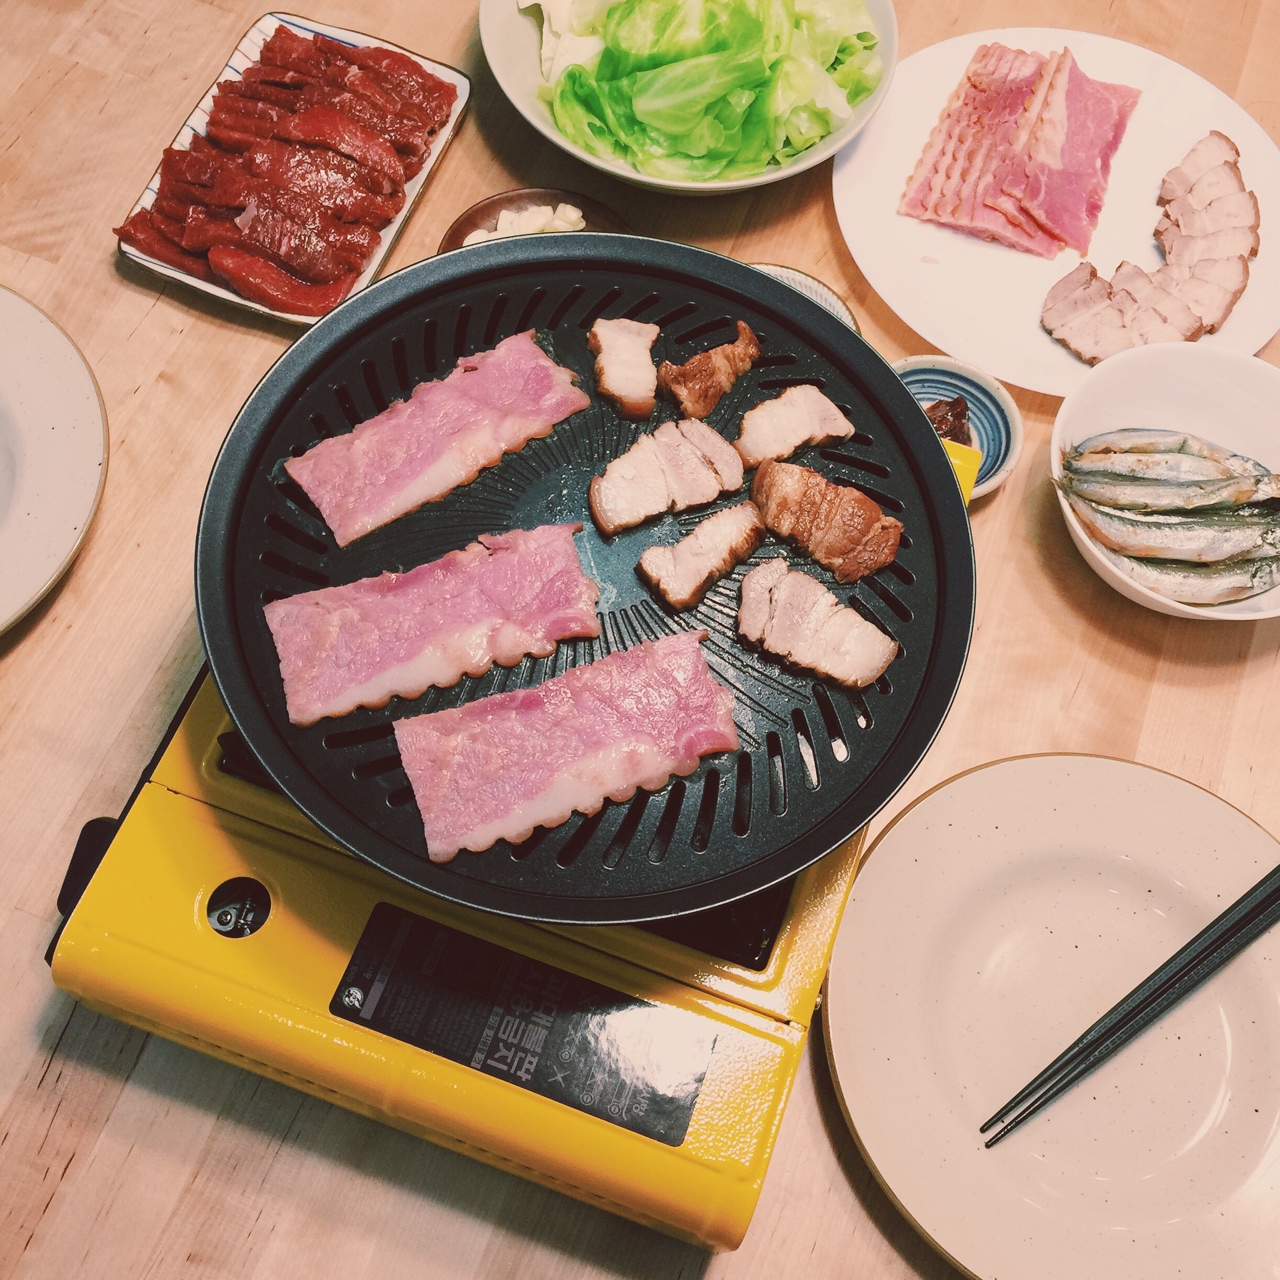 家庭版韩式烤肉的做法